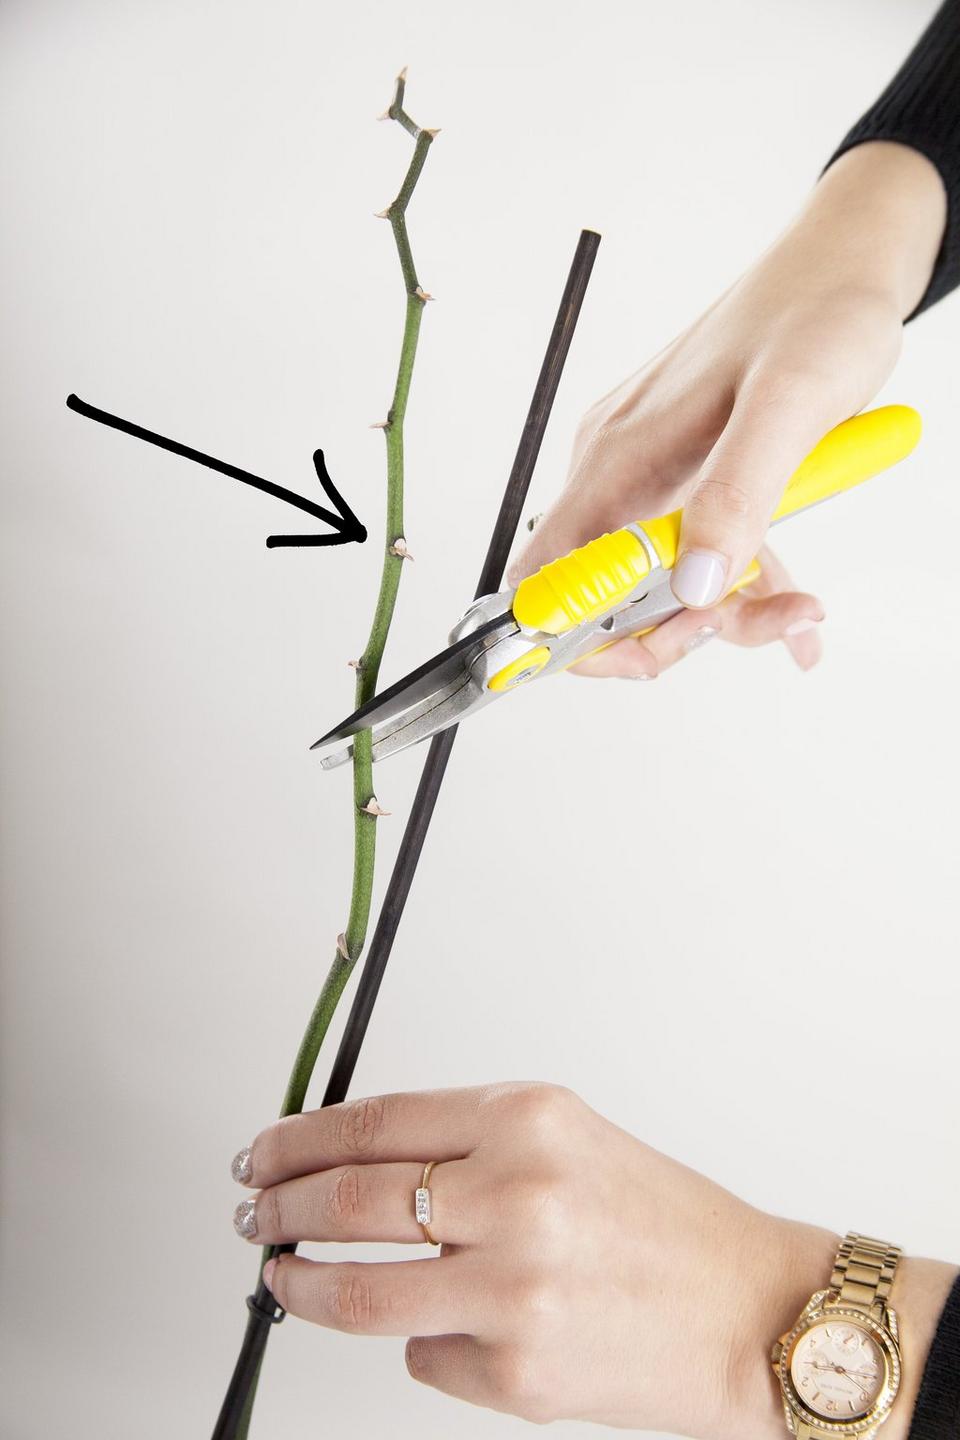 orchid-stem-prune-scissors